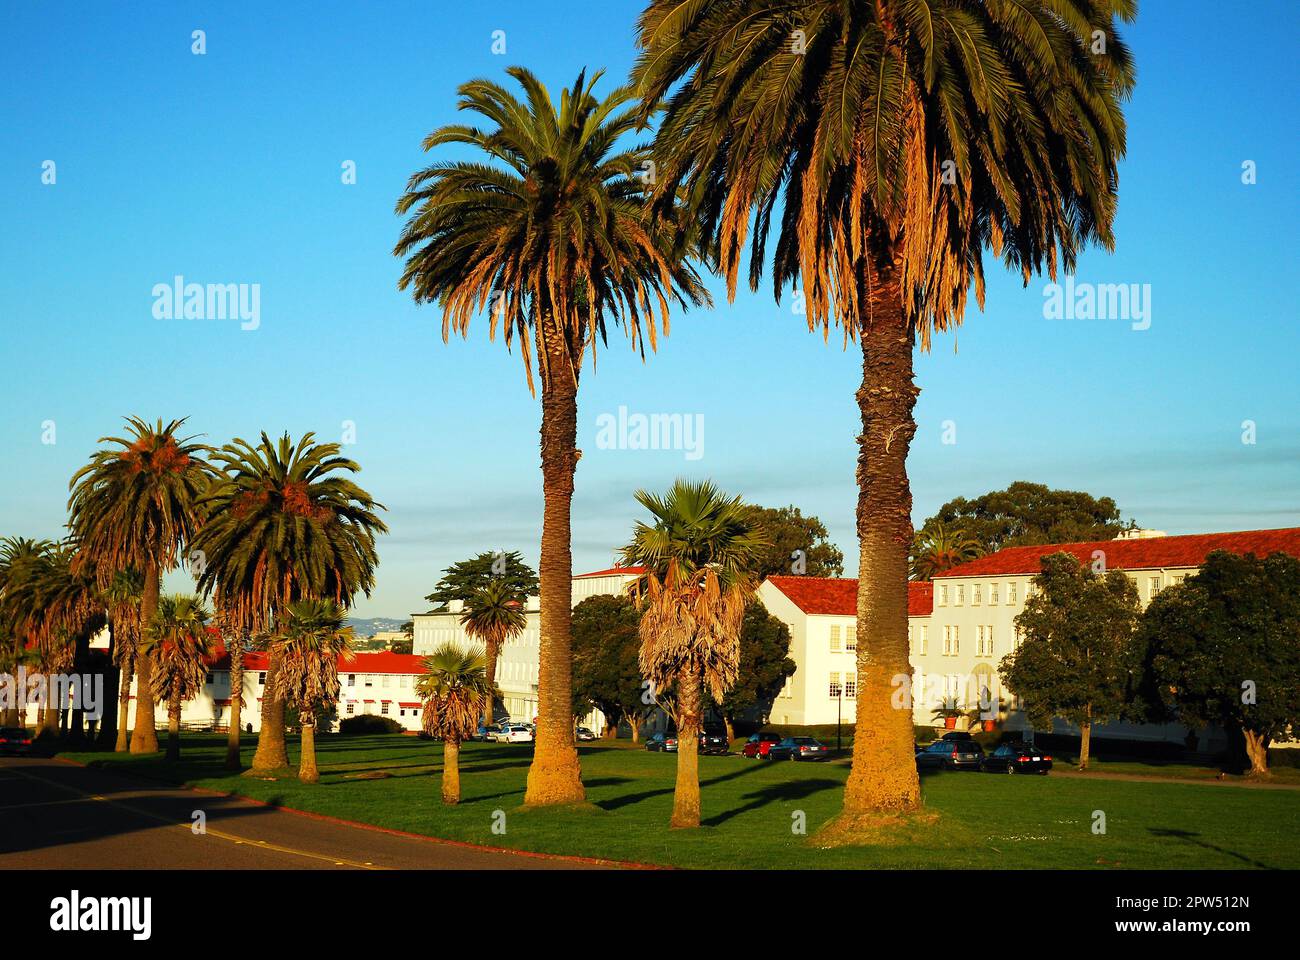 Palmen säumen eine Straße im Presidio, einer ehemaligen Militärbasis in San Francisco Stockfoto